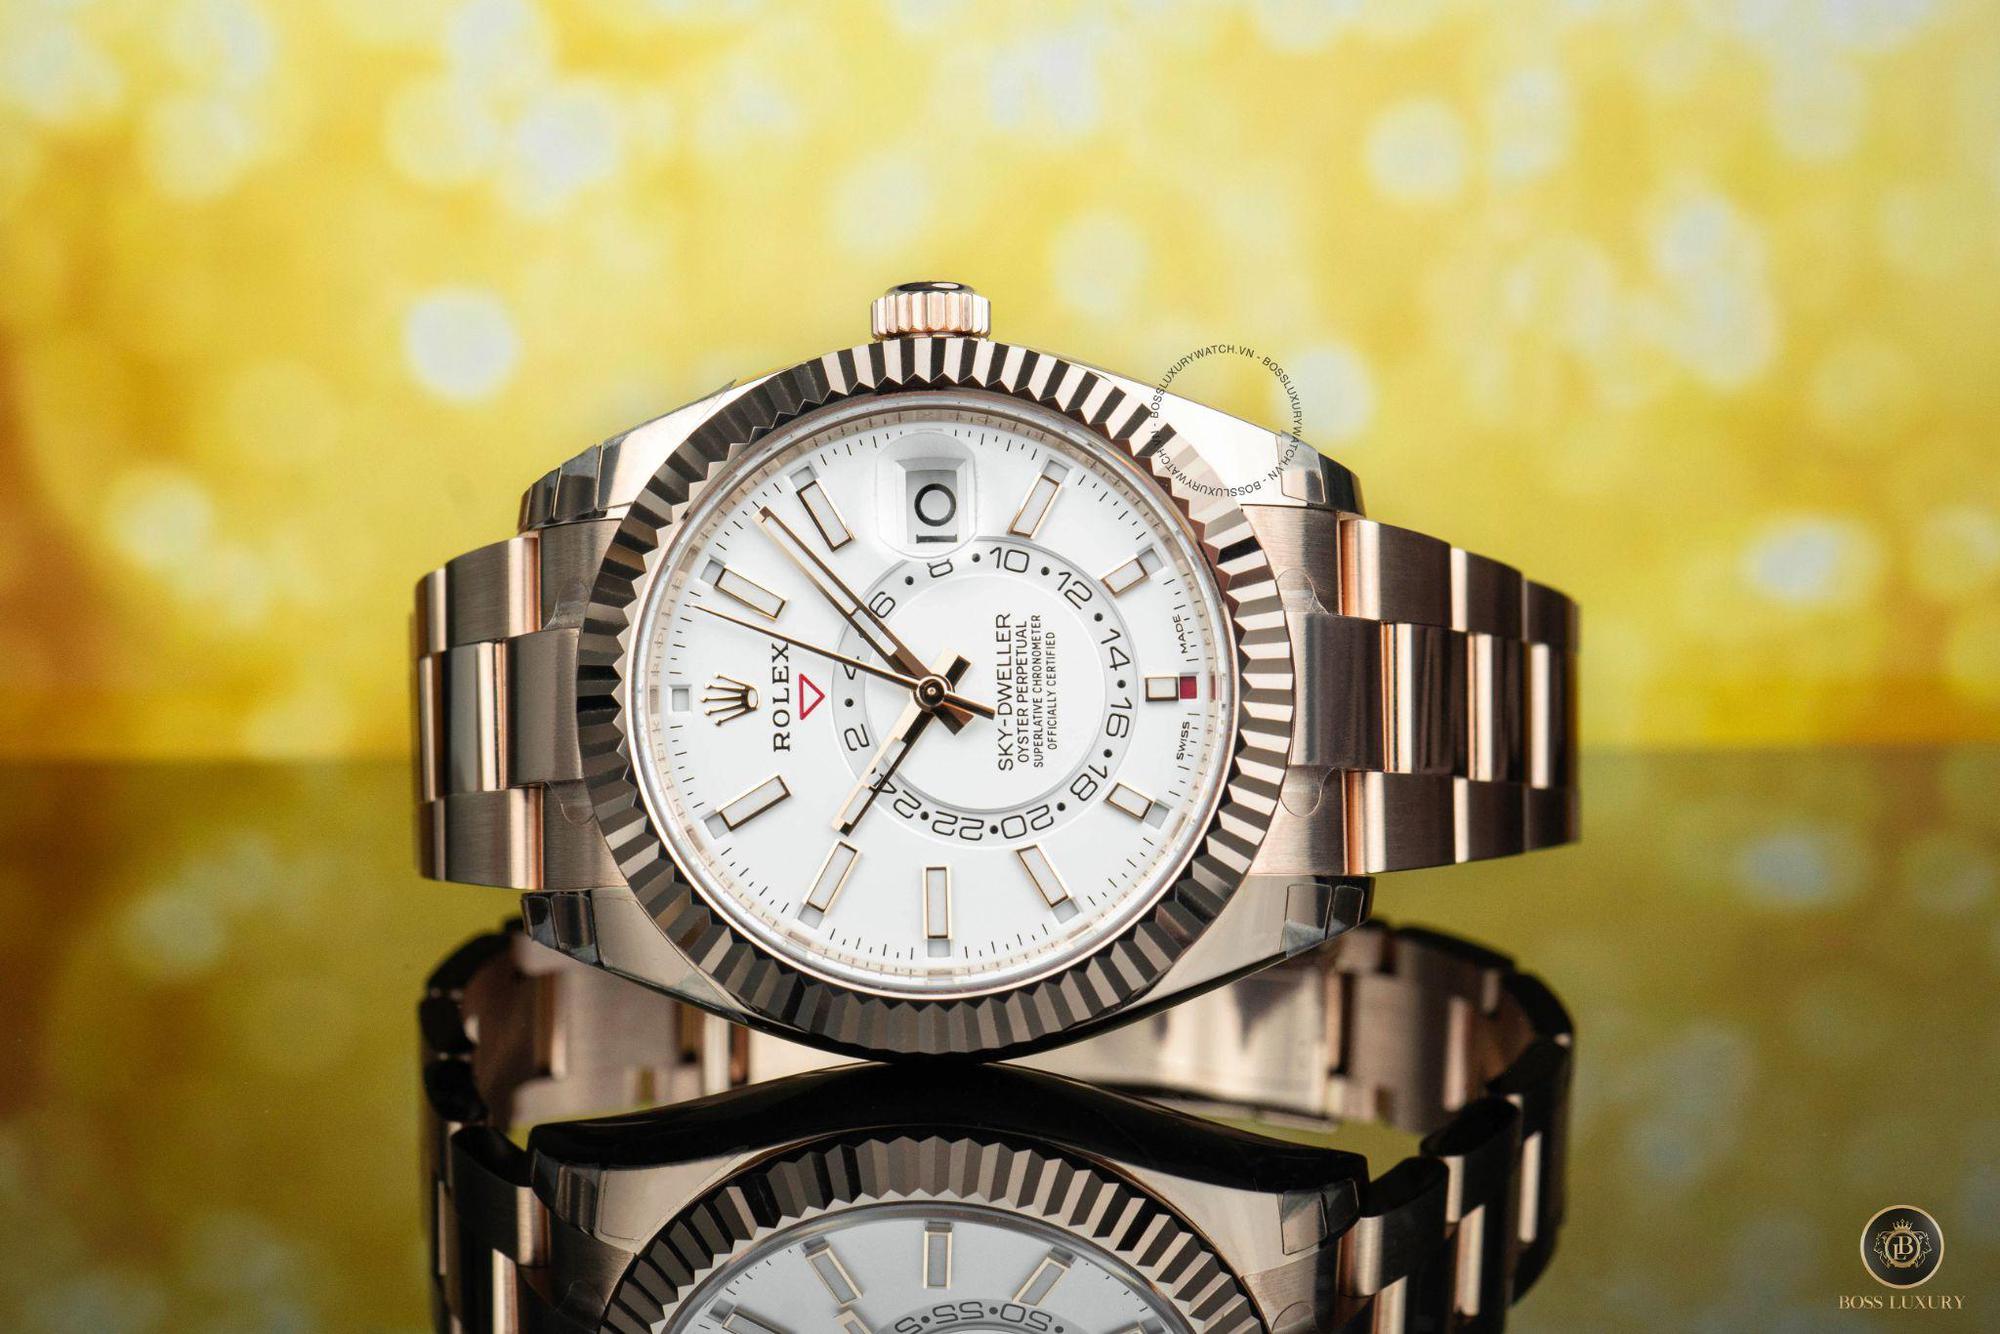 Top 5 mẫu đồng hồ Rolex bạn nên đầu tư trong năm 2022 theo Boss Luxury - Ảnh 3.